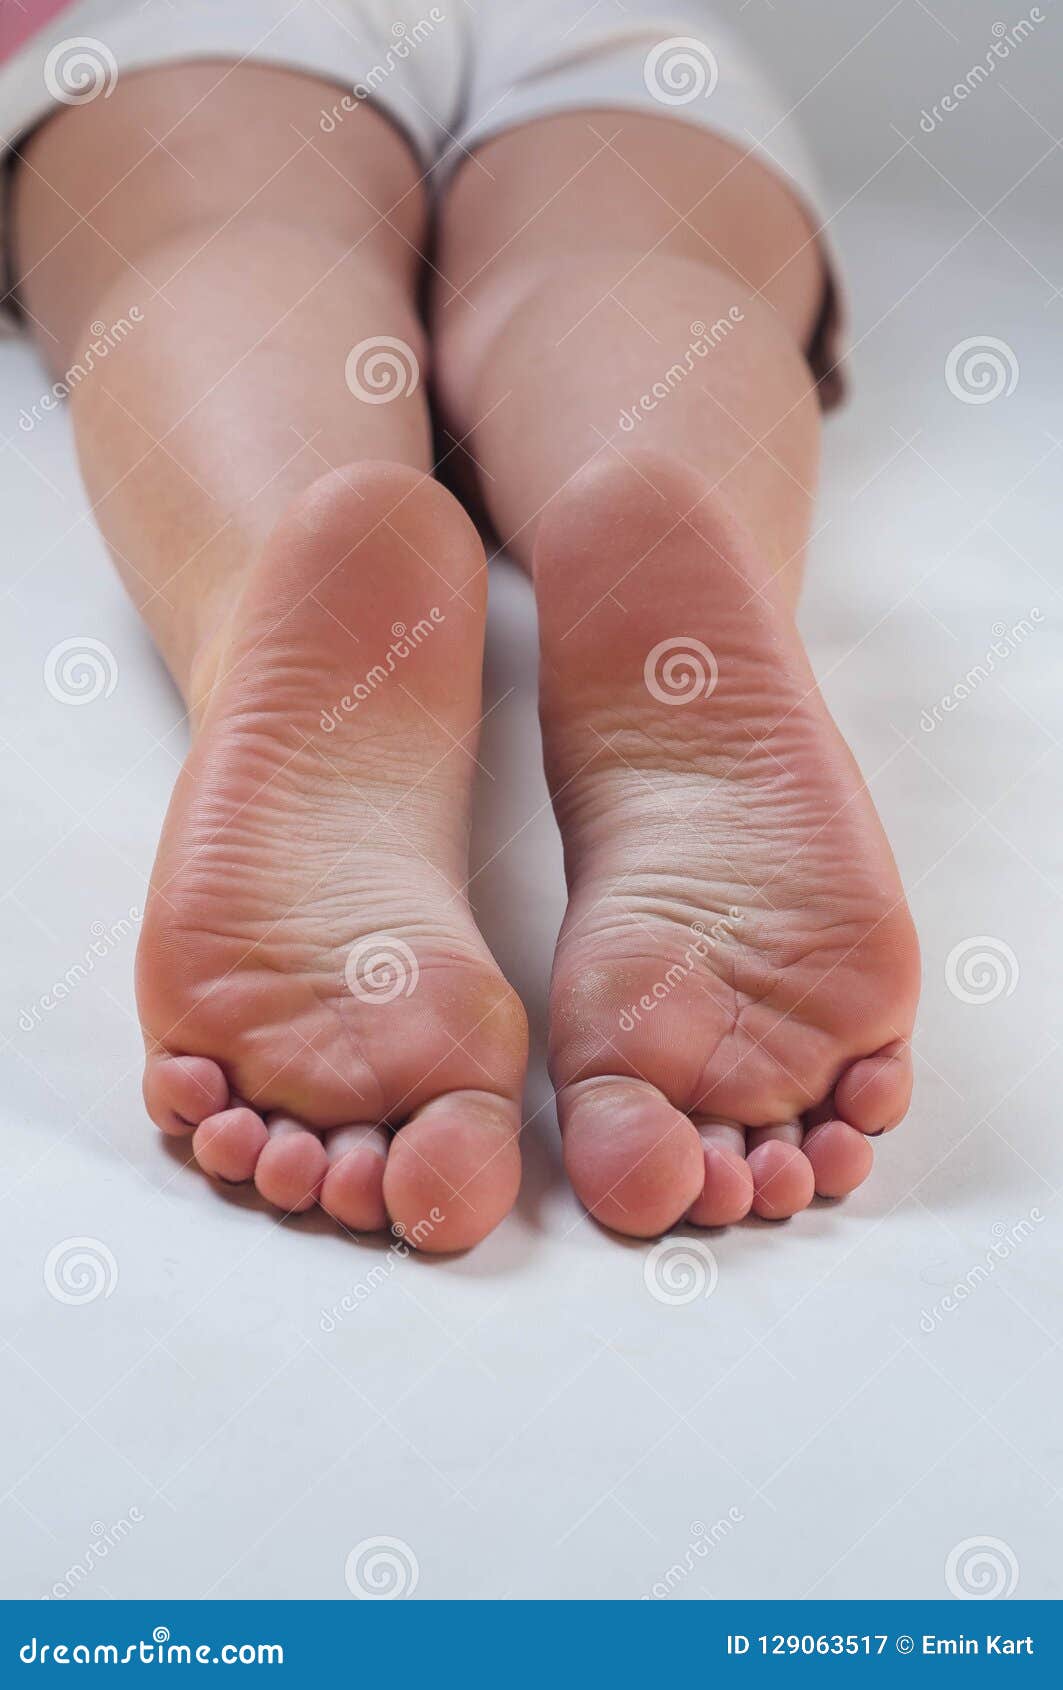 Women legs feet soles